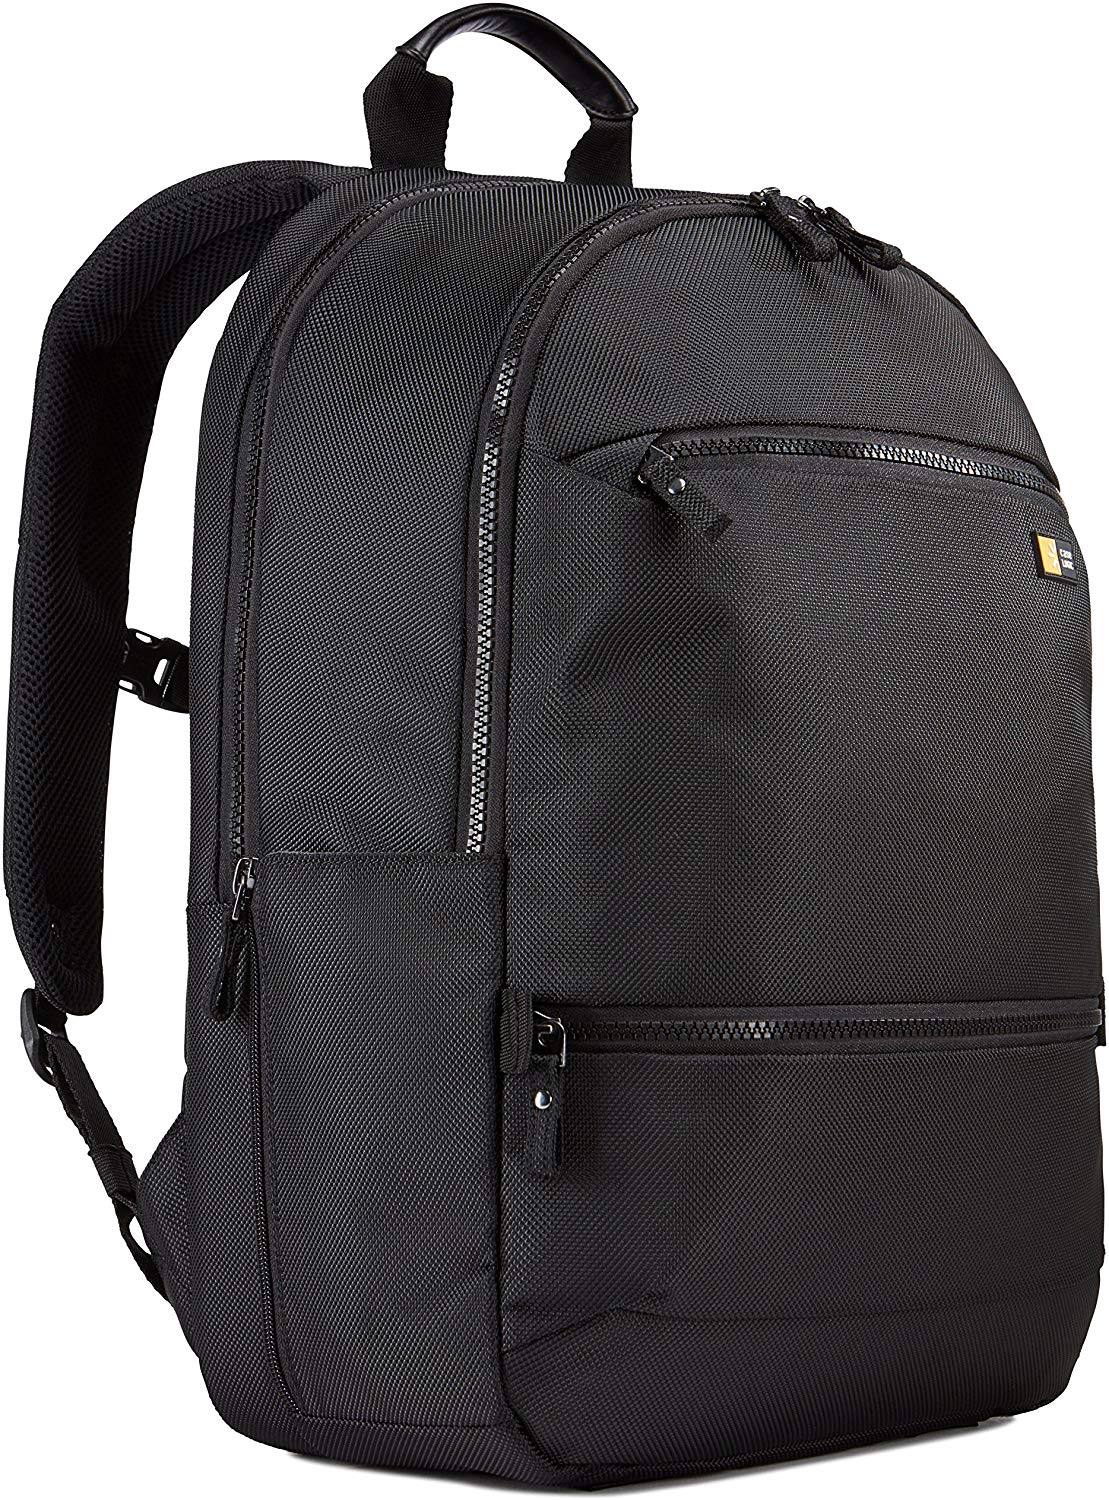 laptop bag, bag, backpack, laptop backpack, 15.6, 15.6 inch, 15 inch, 15  caselogic, case logic, bryker